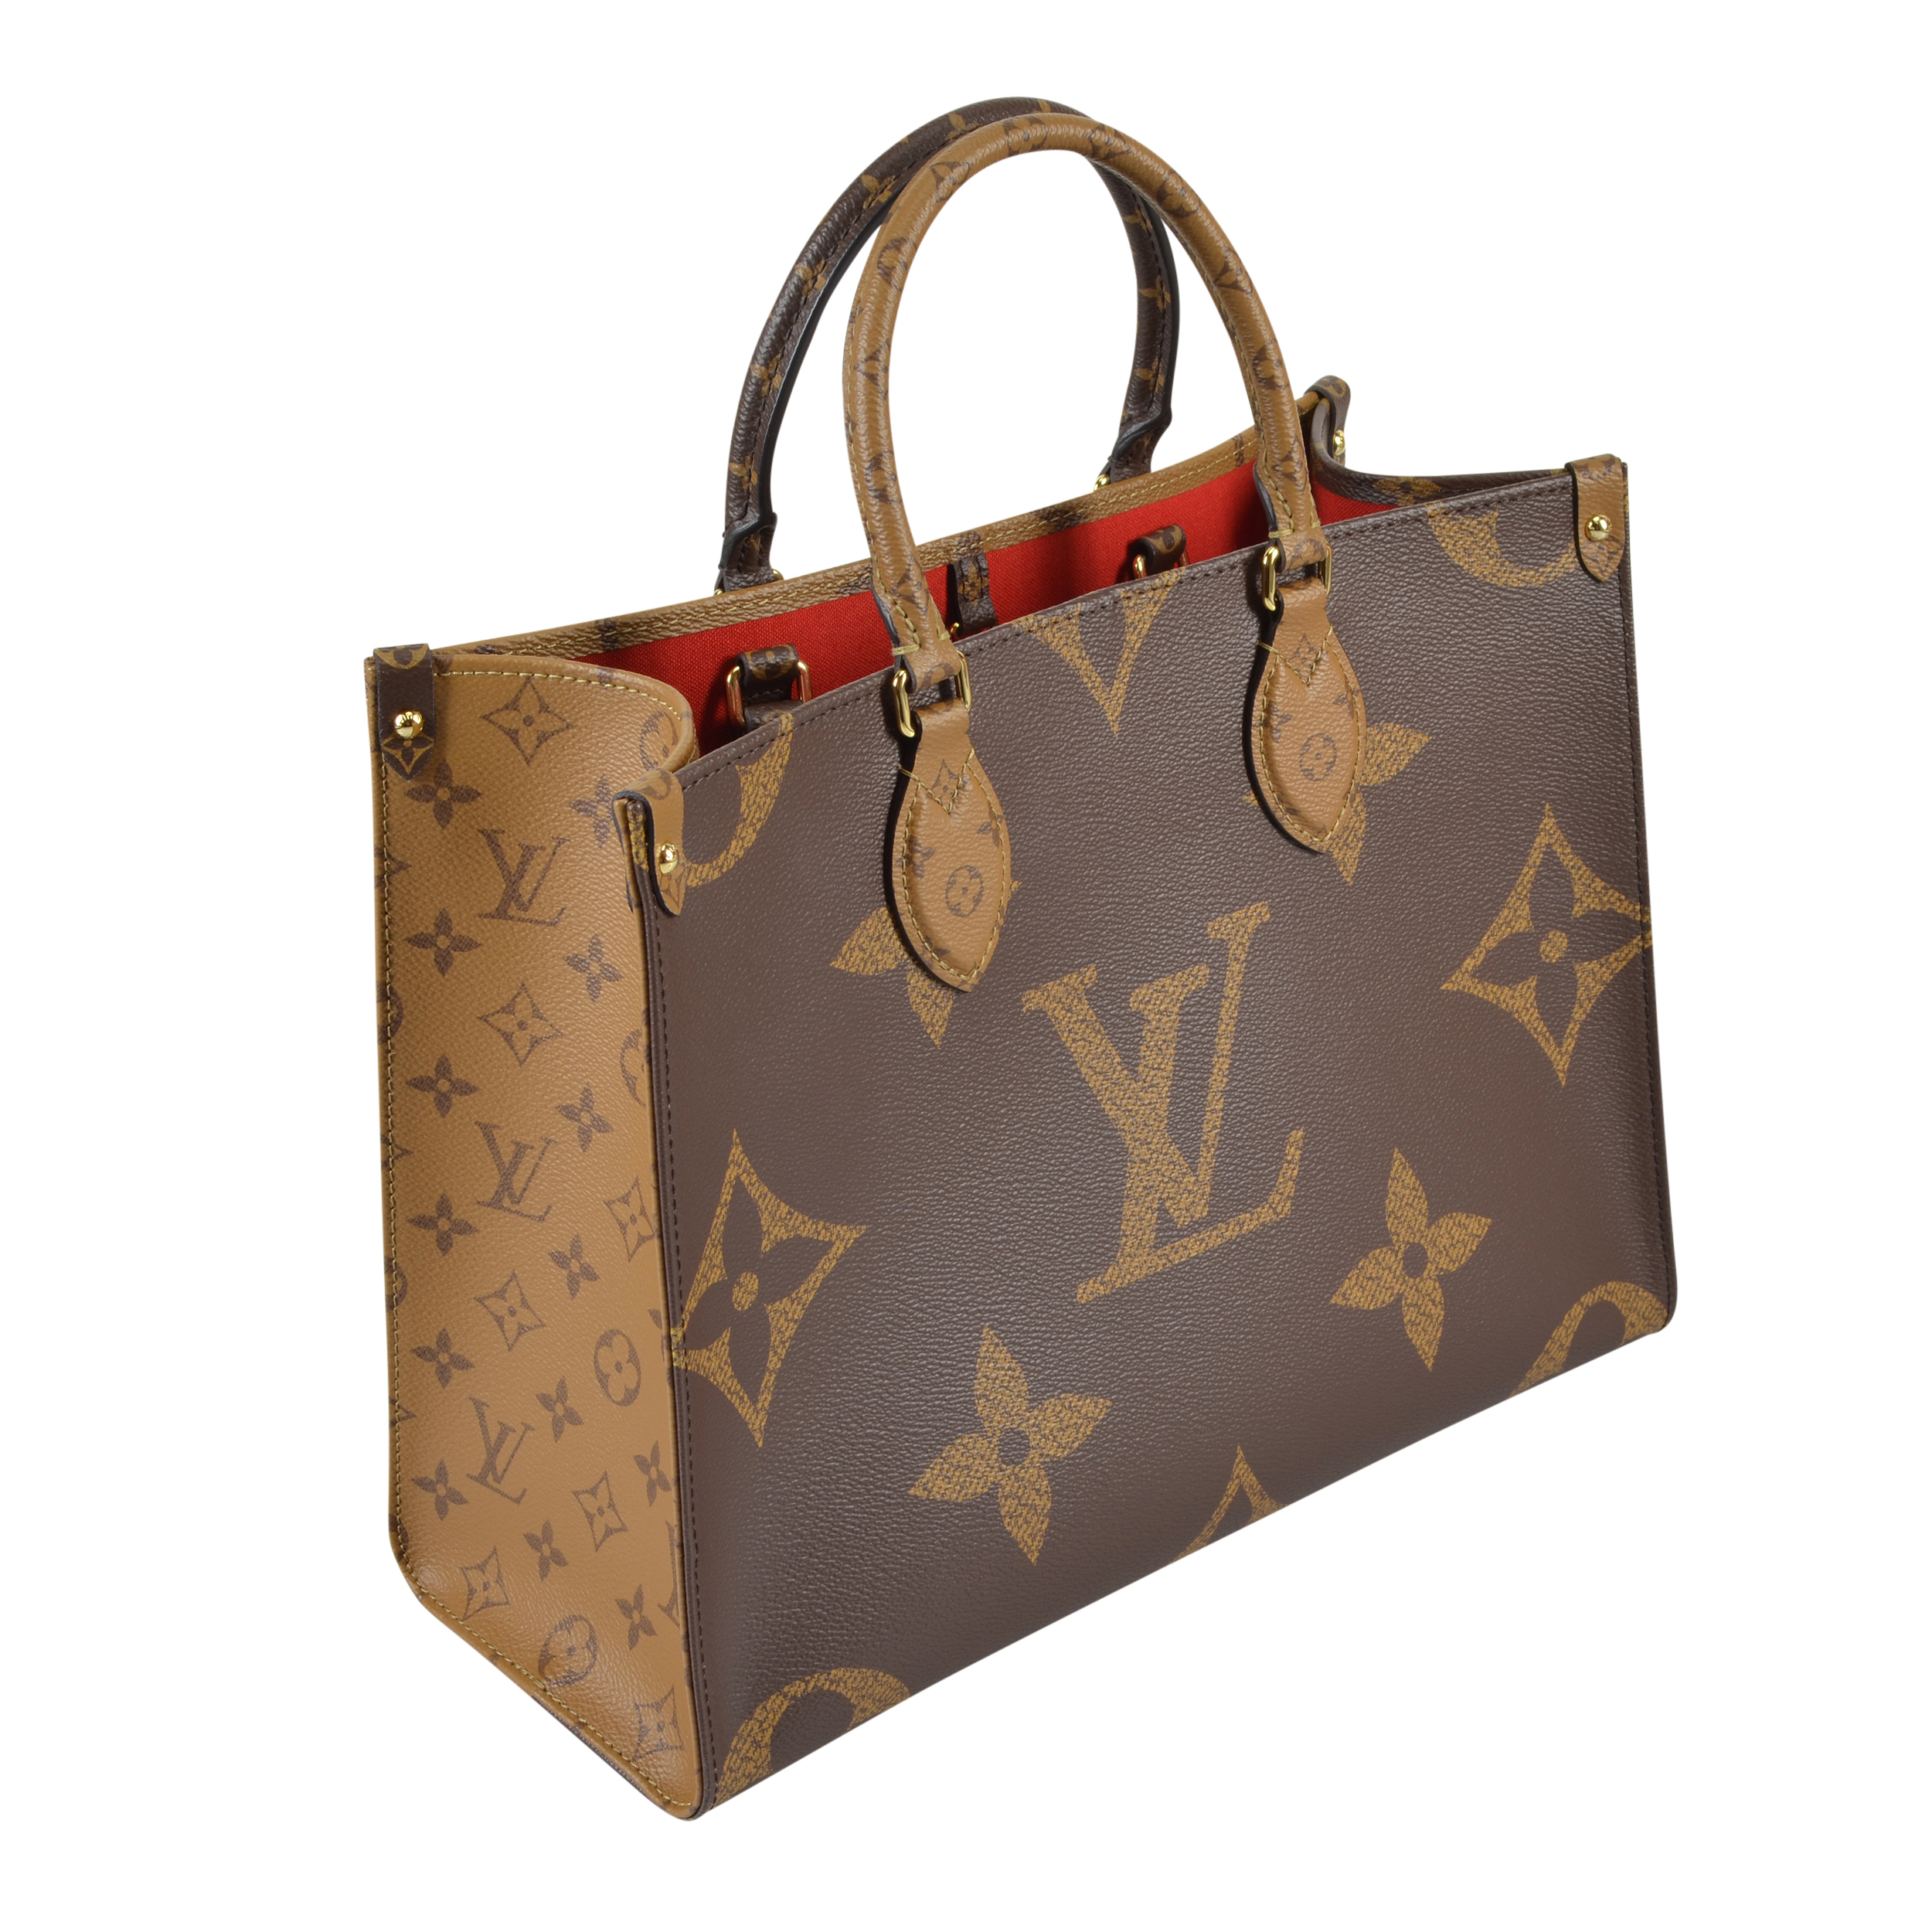 Louis Vuitton Handtaschen günstig kaufen